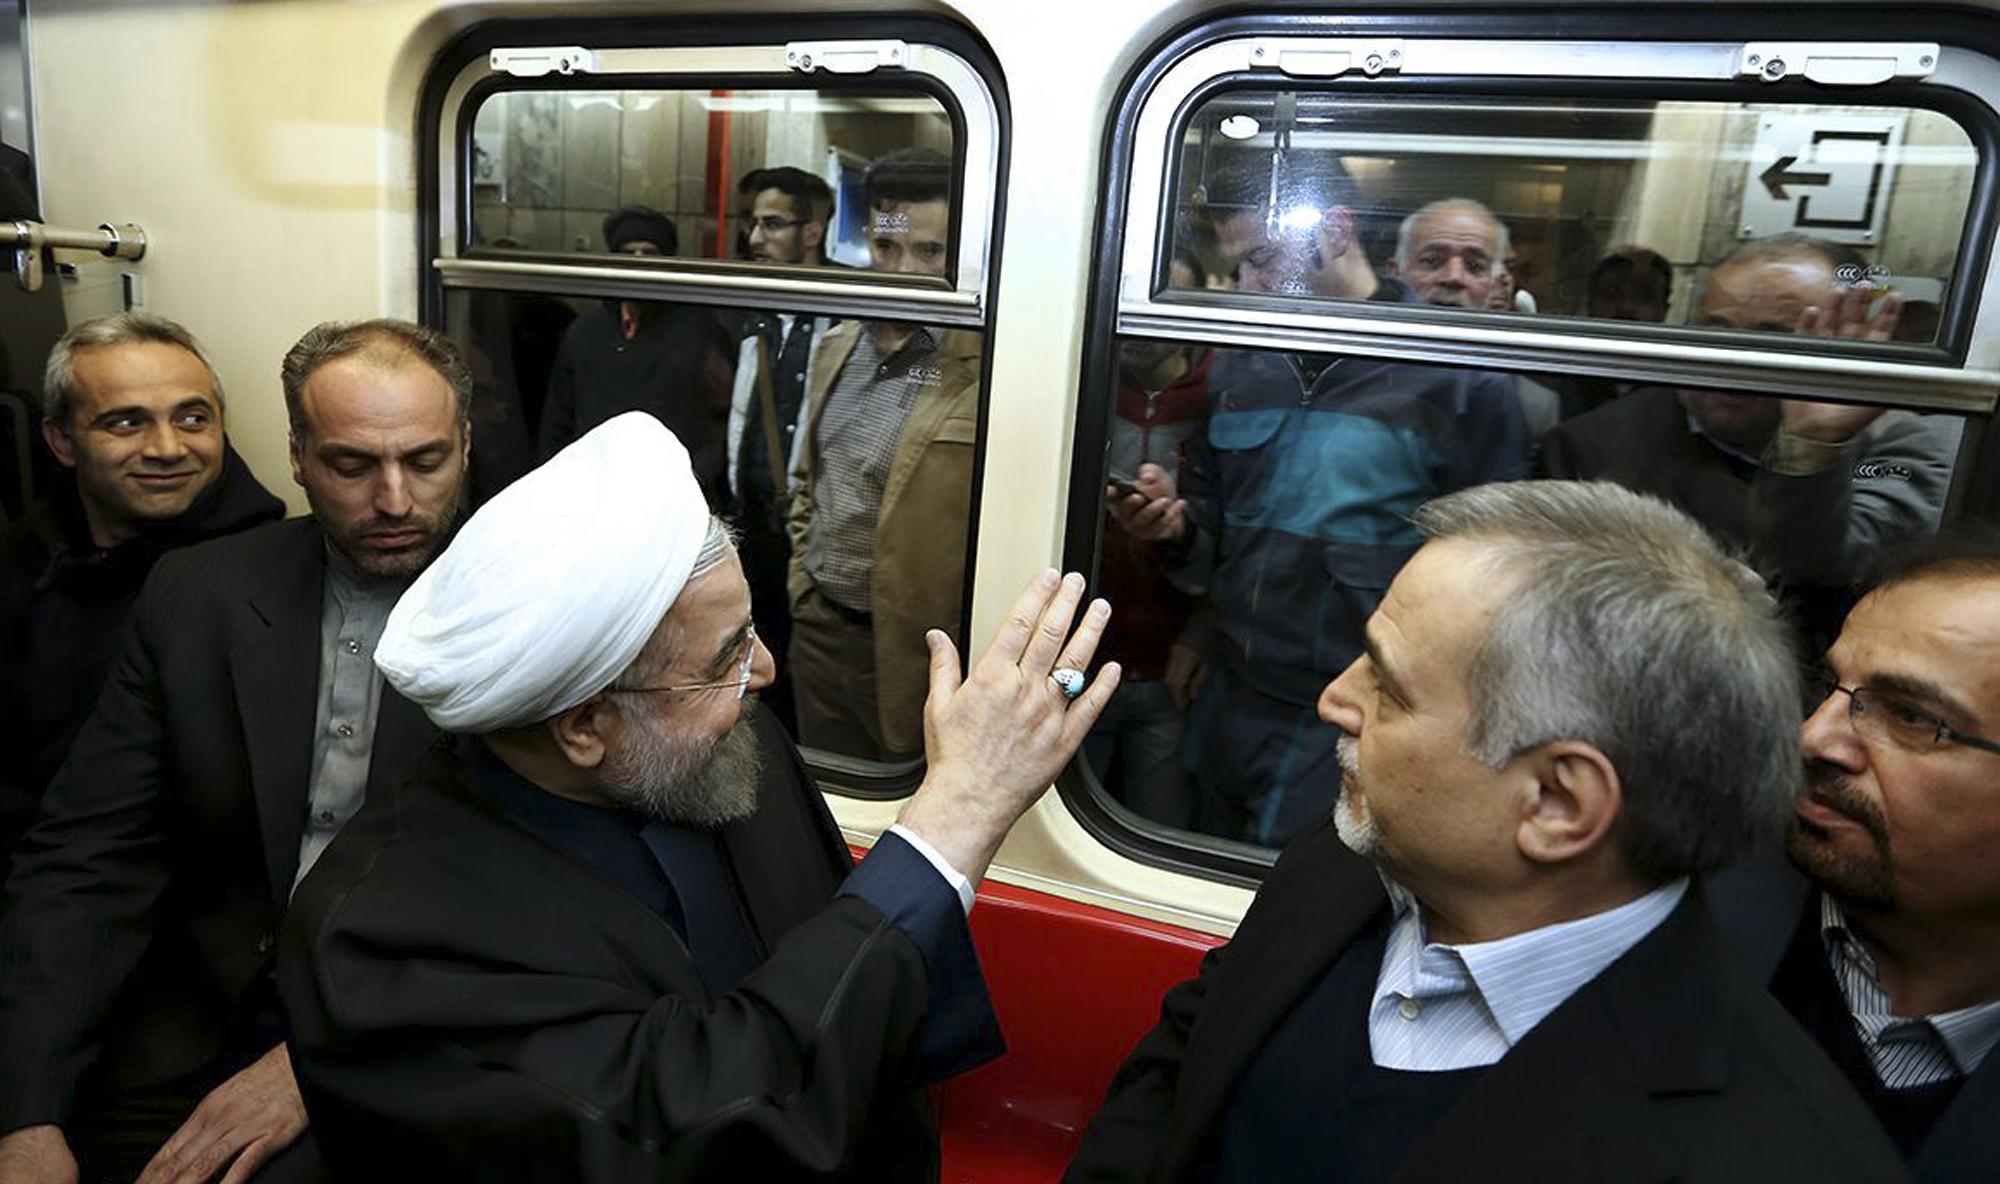 Presidente de Irán se sube al metro y sorprende a pasajeros (Fotos)